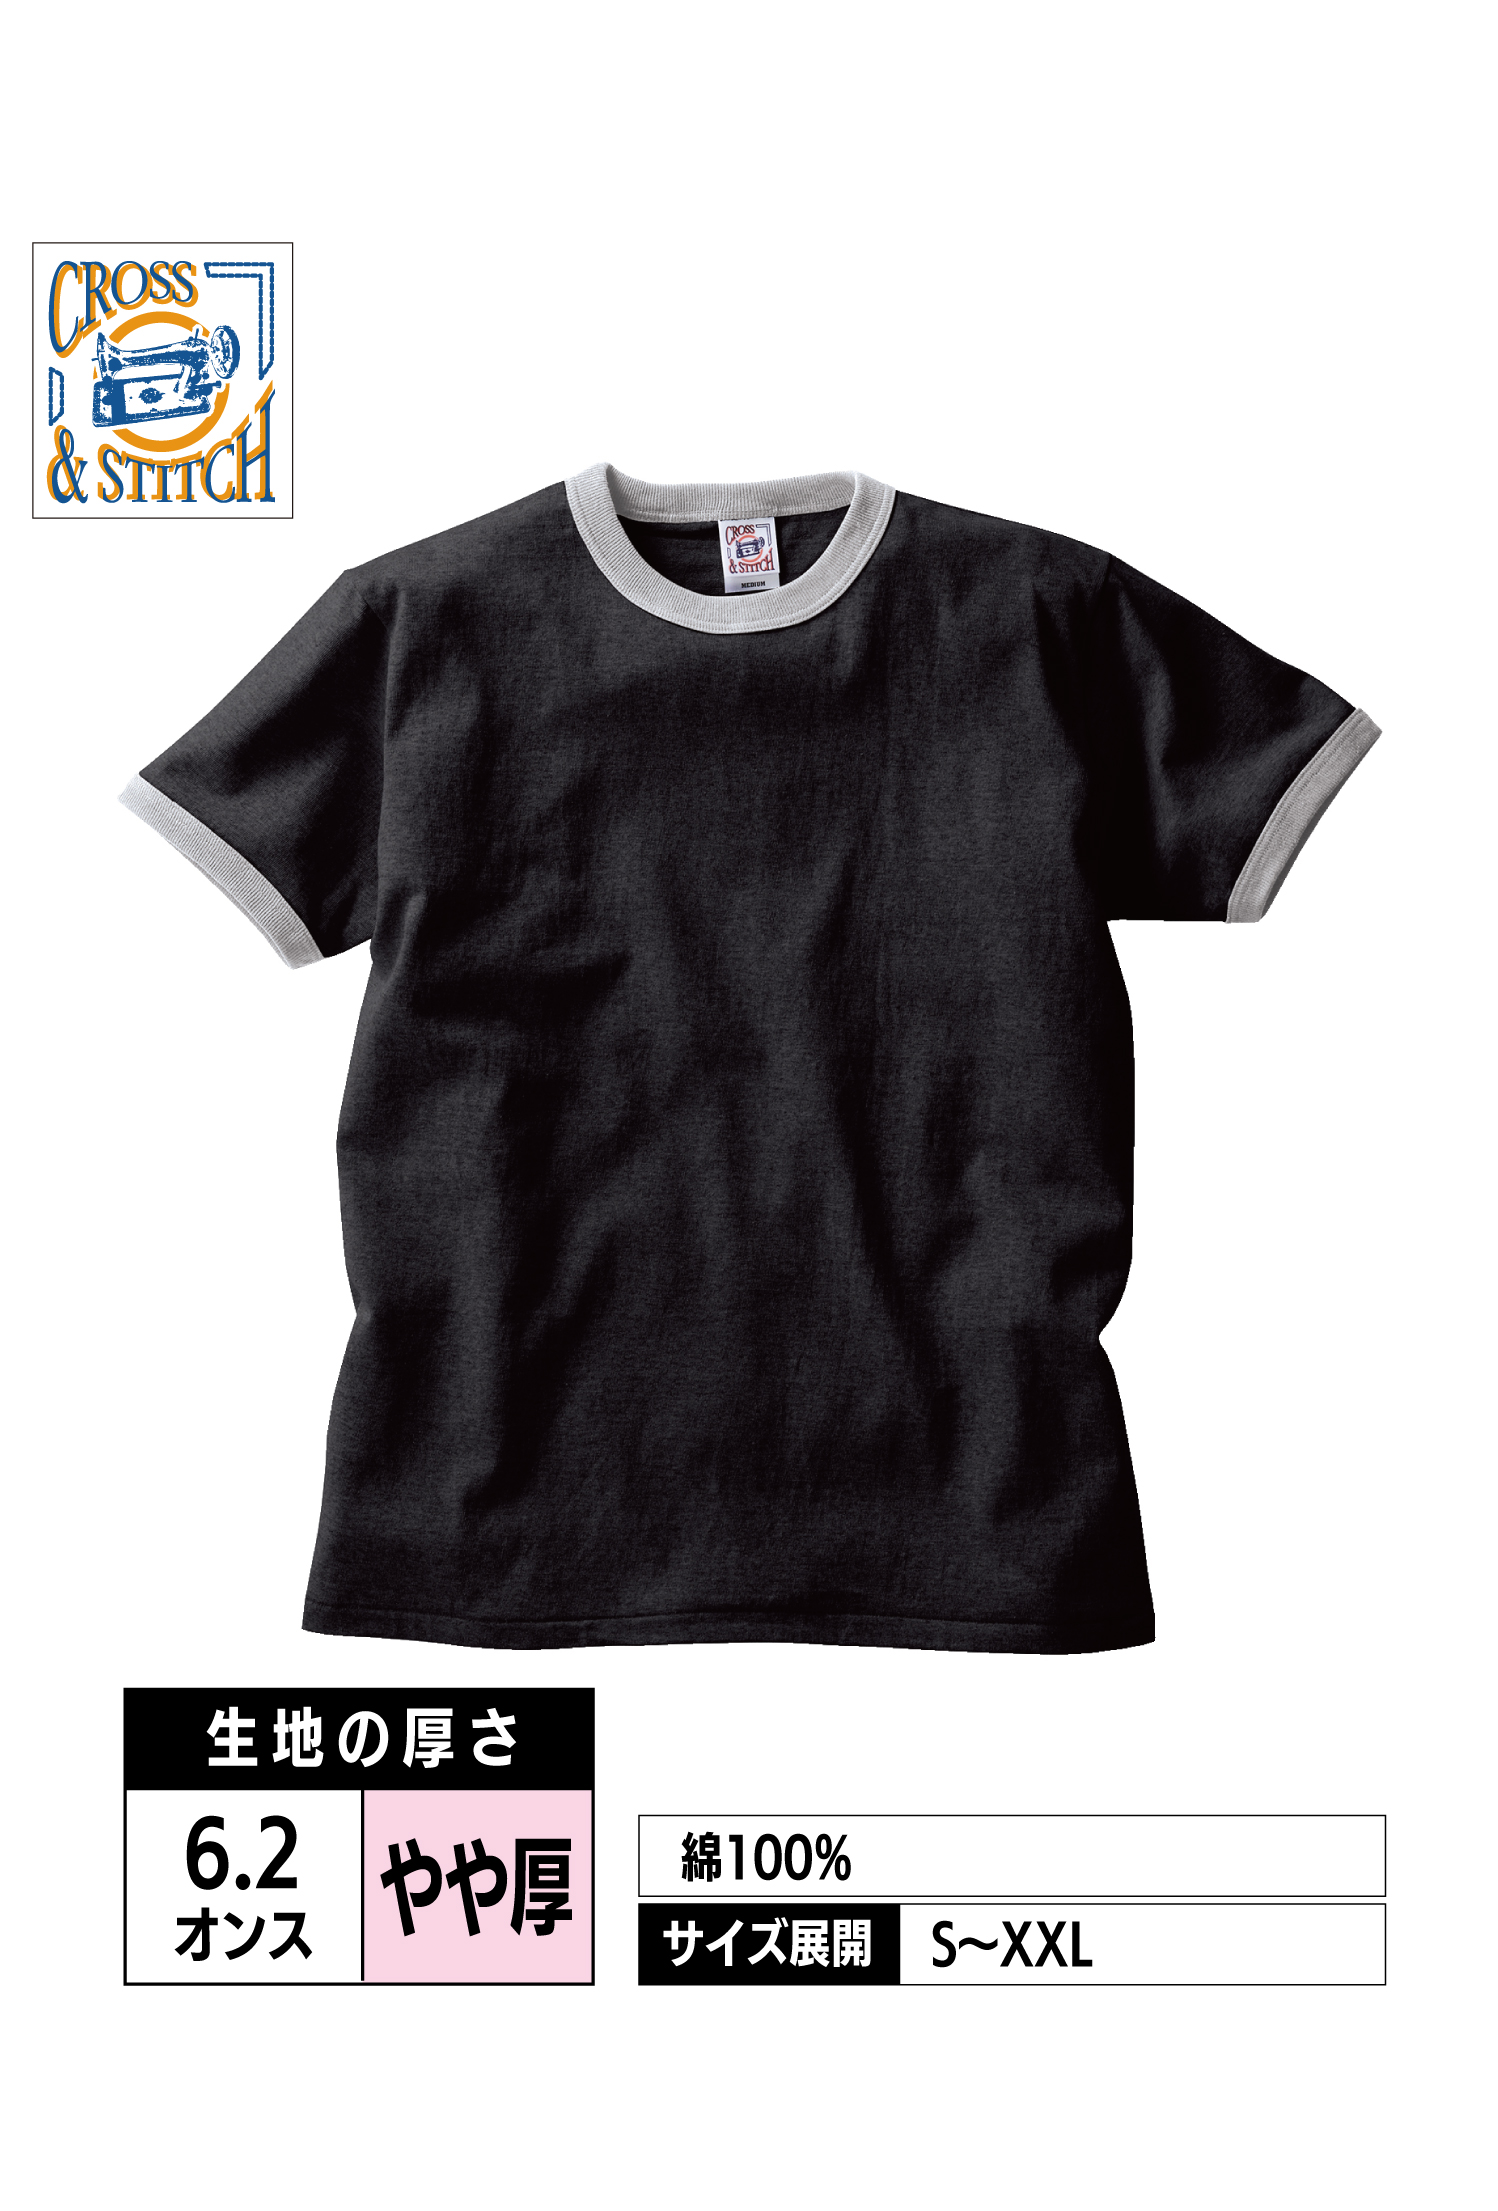 OE1121｜オープンエンド マックスウェイト リンガーTシャツ【全8色】CROSS&STITCH